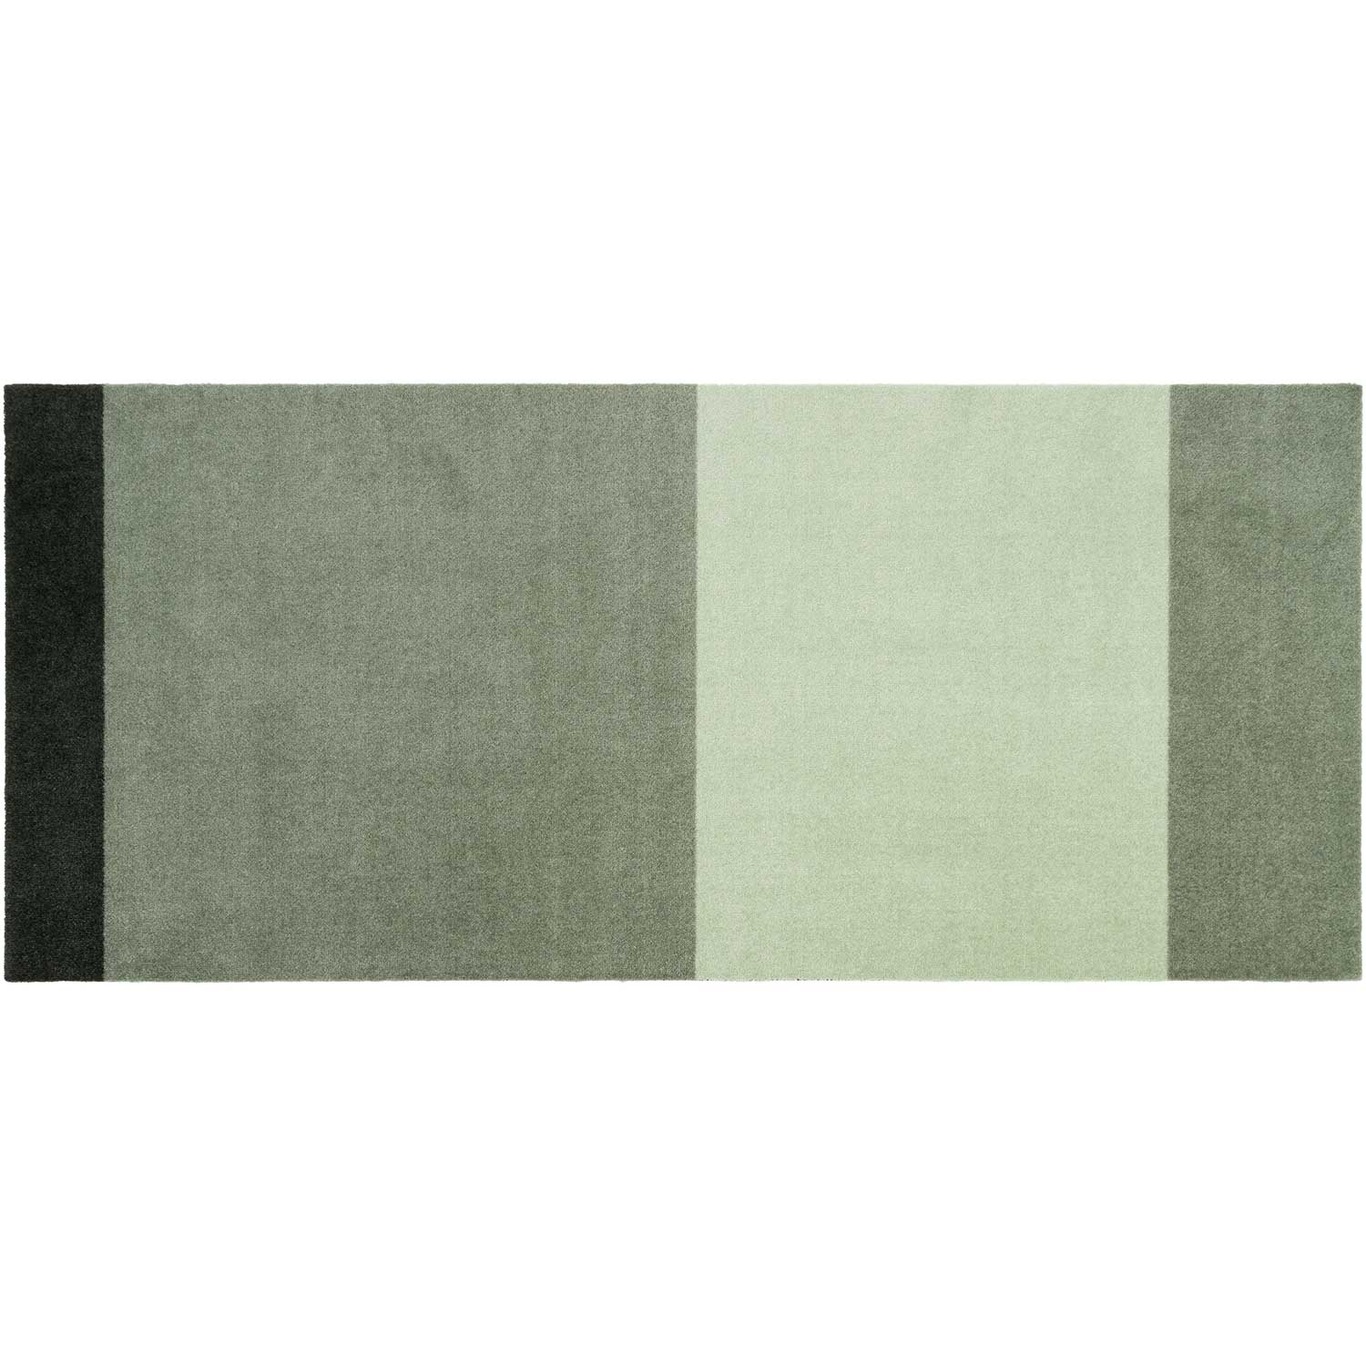 Stripes Teppich Hellgrün / Dunkelgrün, 90x200 cm